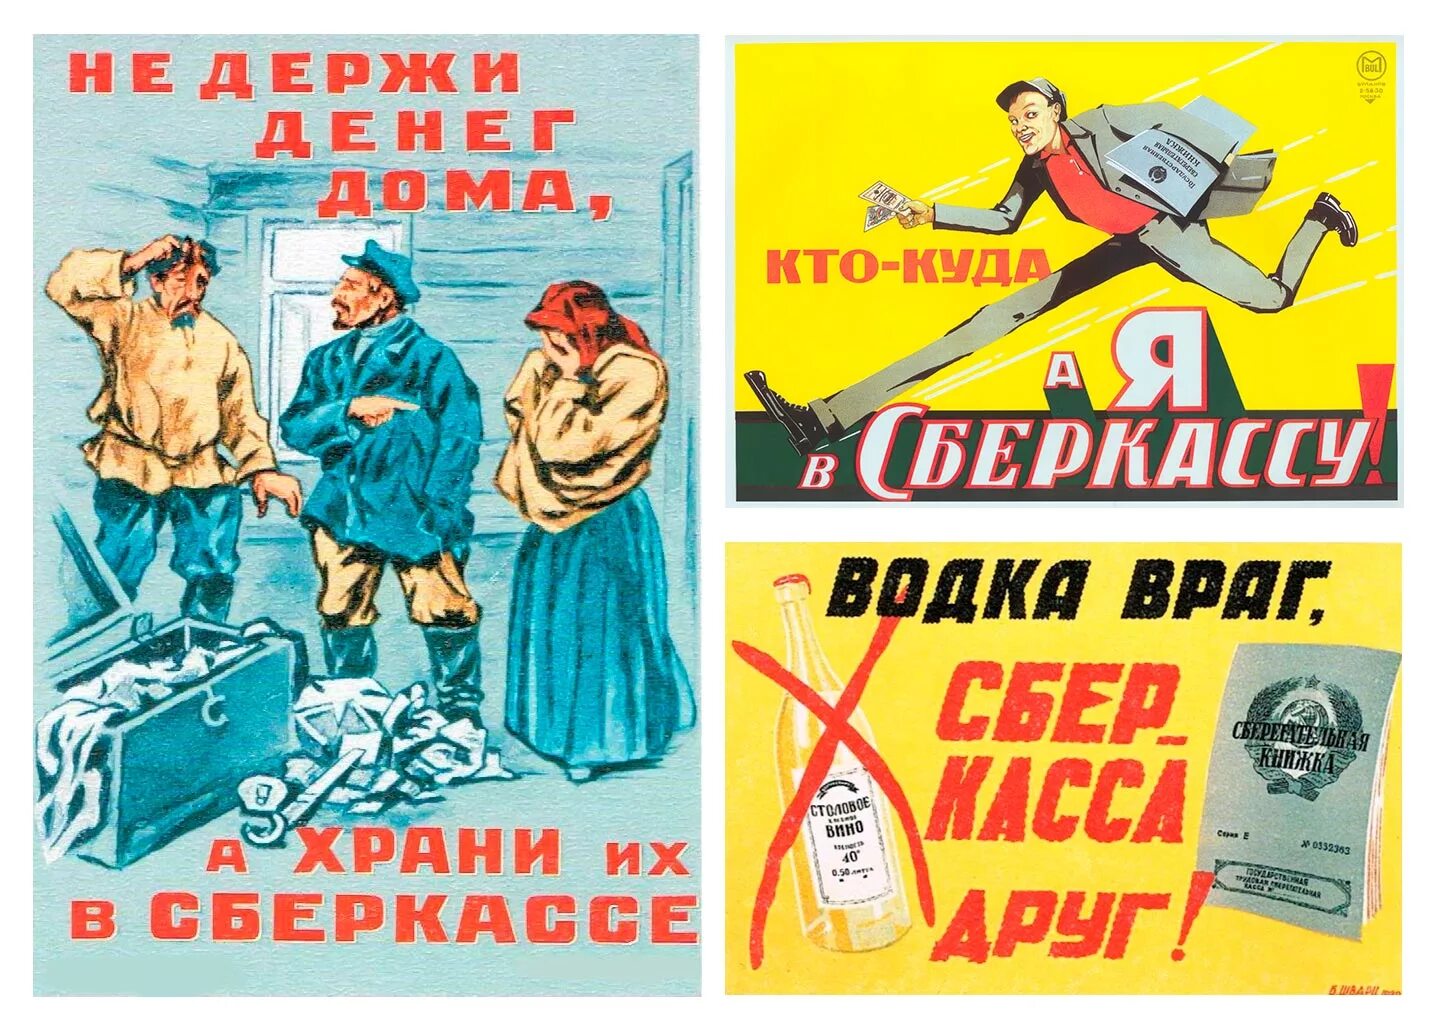 Кто куда а я. Советские плакаты сберкасса. Первая реклама в СССР. Кто куда а я в сберкассу плакат. Реклама в Советской прессе.